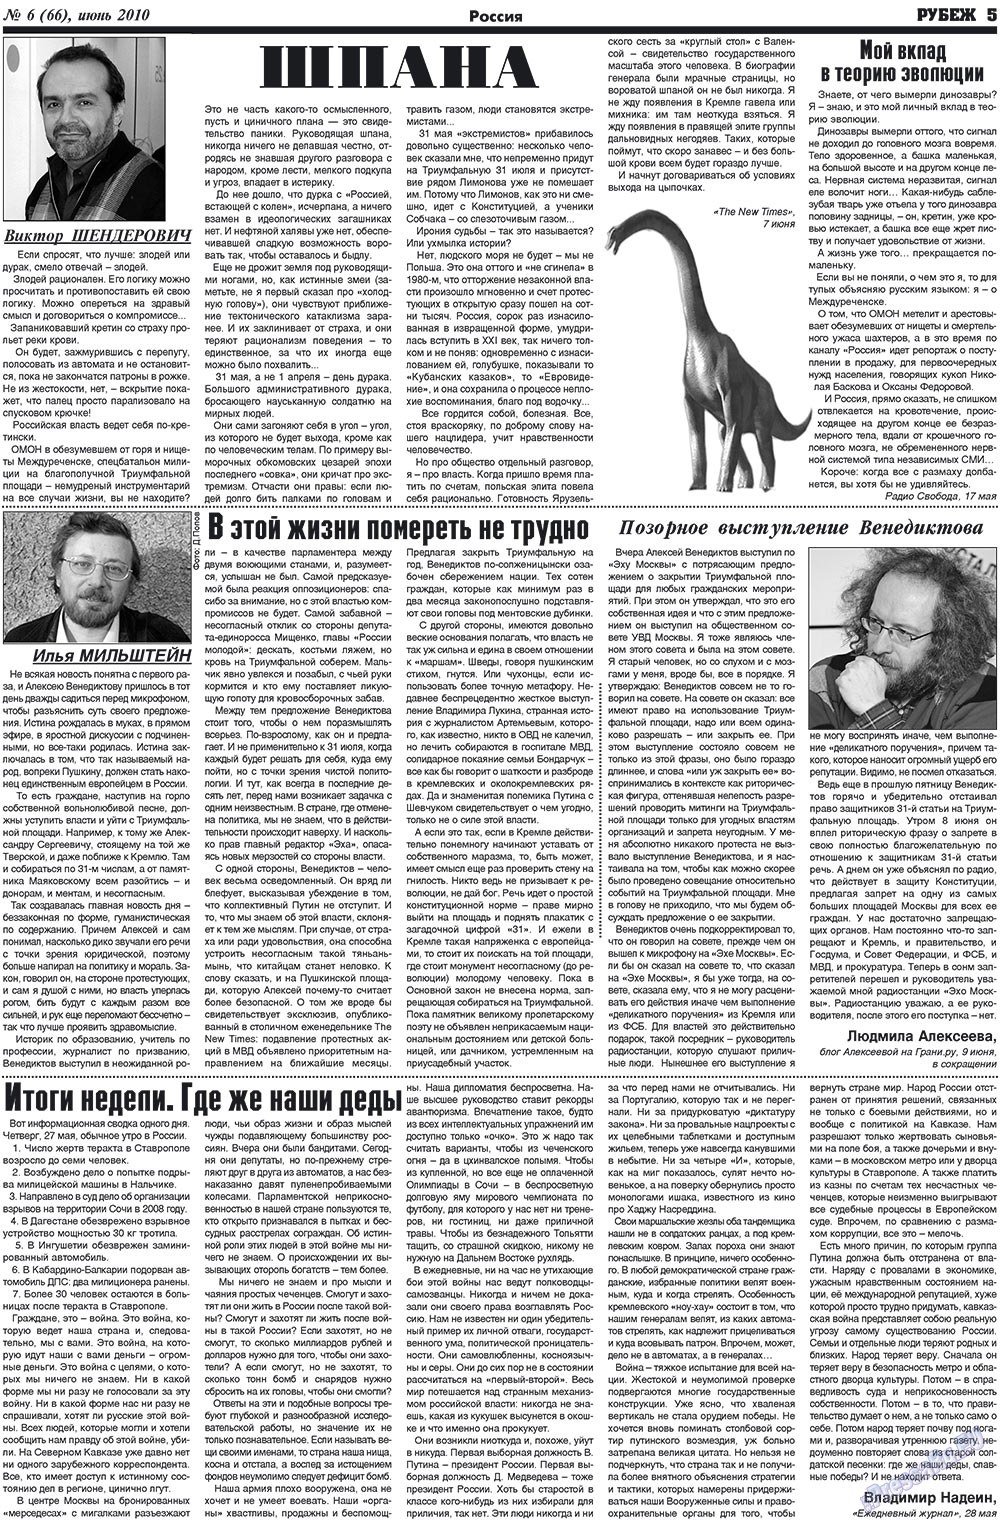 Рубеж (газета). 2010 год, номер 6, стр. 5